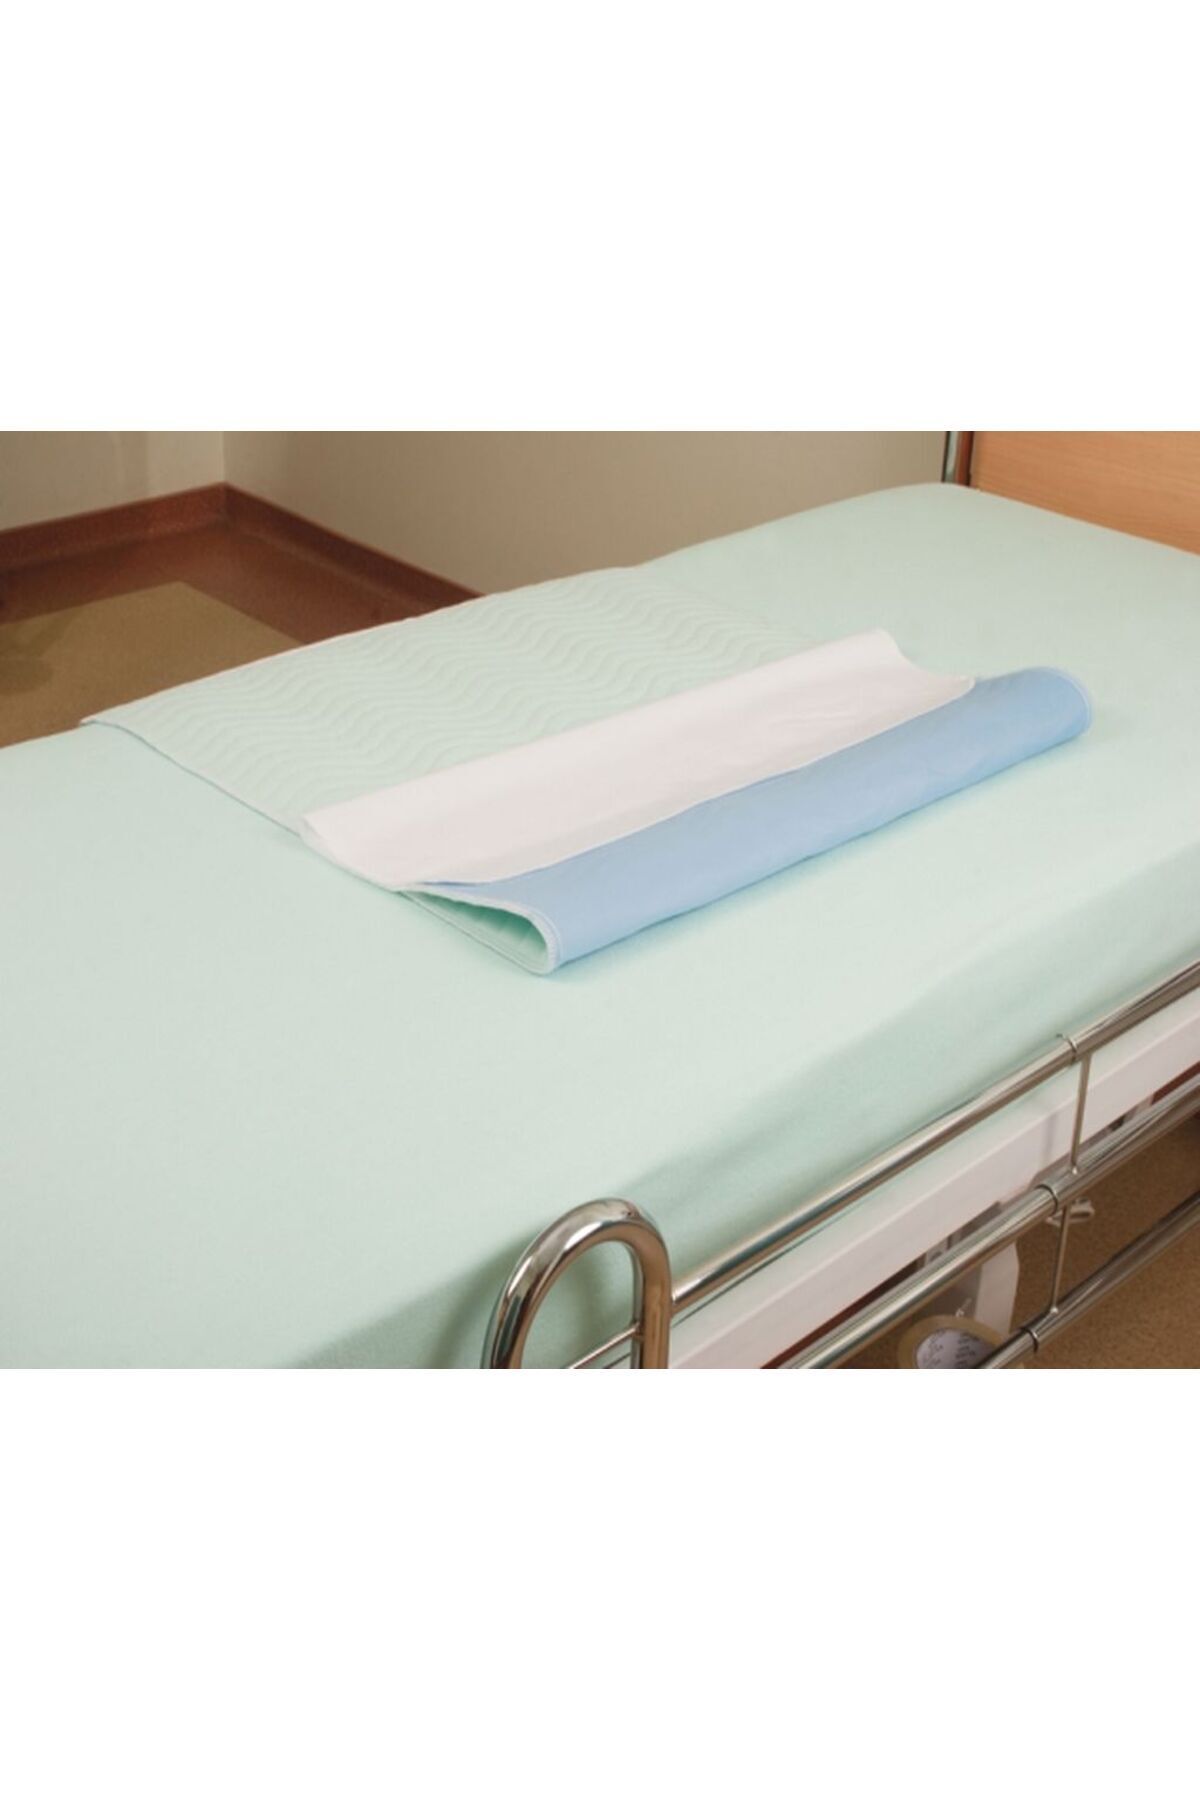 CDE Abso (2 Lİ EKONOMİK PAKET) Yıkanabilir,sıvı Geçirmez Hasta Altı Yatak Örtüsü (75X85 CM)